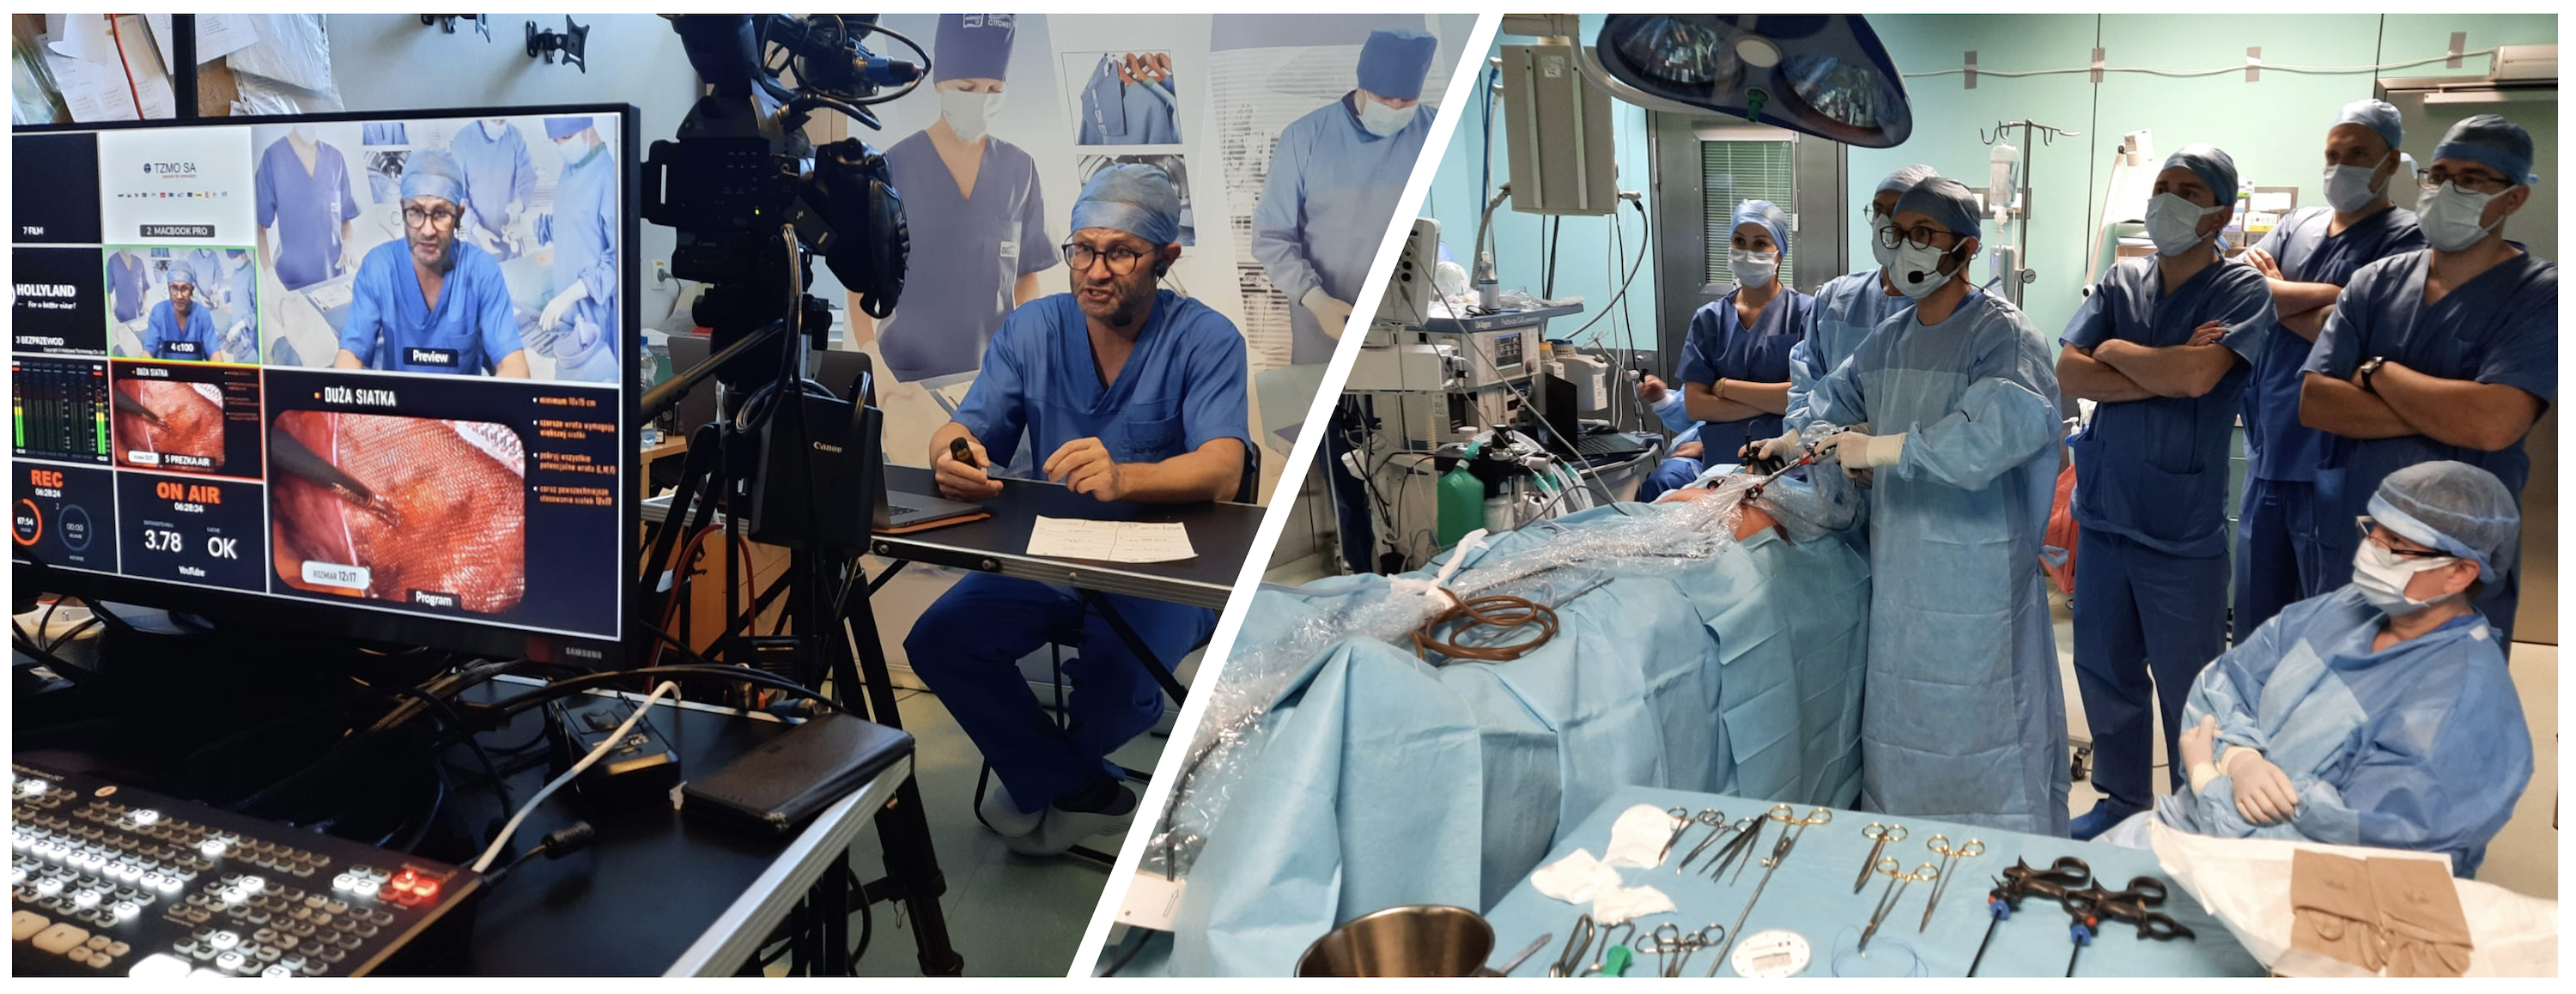 Międzynarodowe warsztaty chirurgiczne z prezentacją innowacyjnych rozwiązań technologicznych